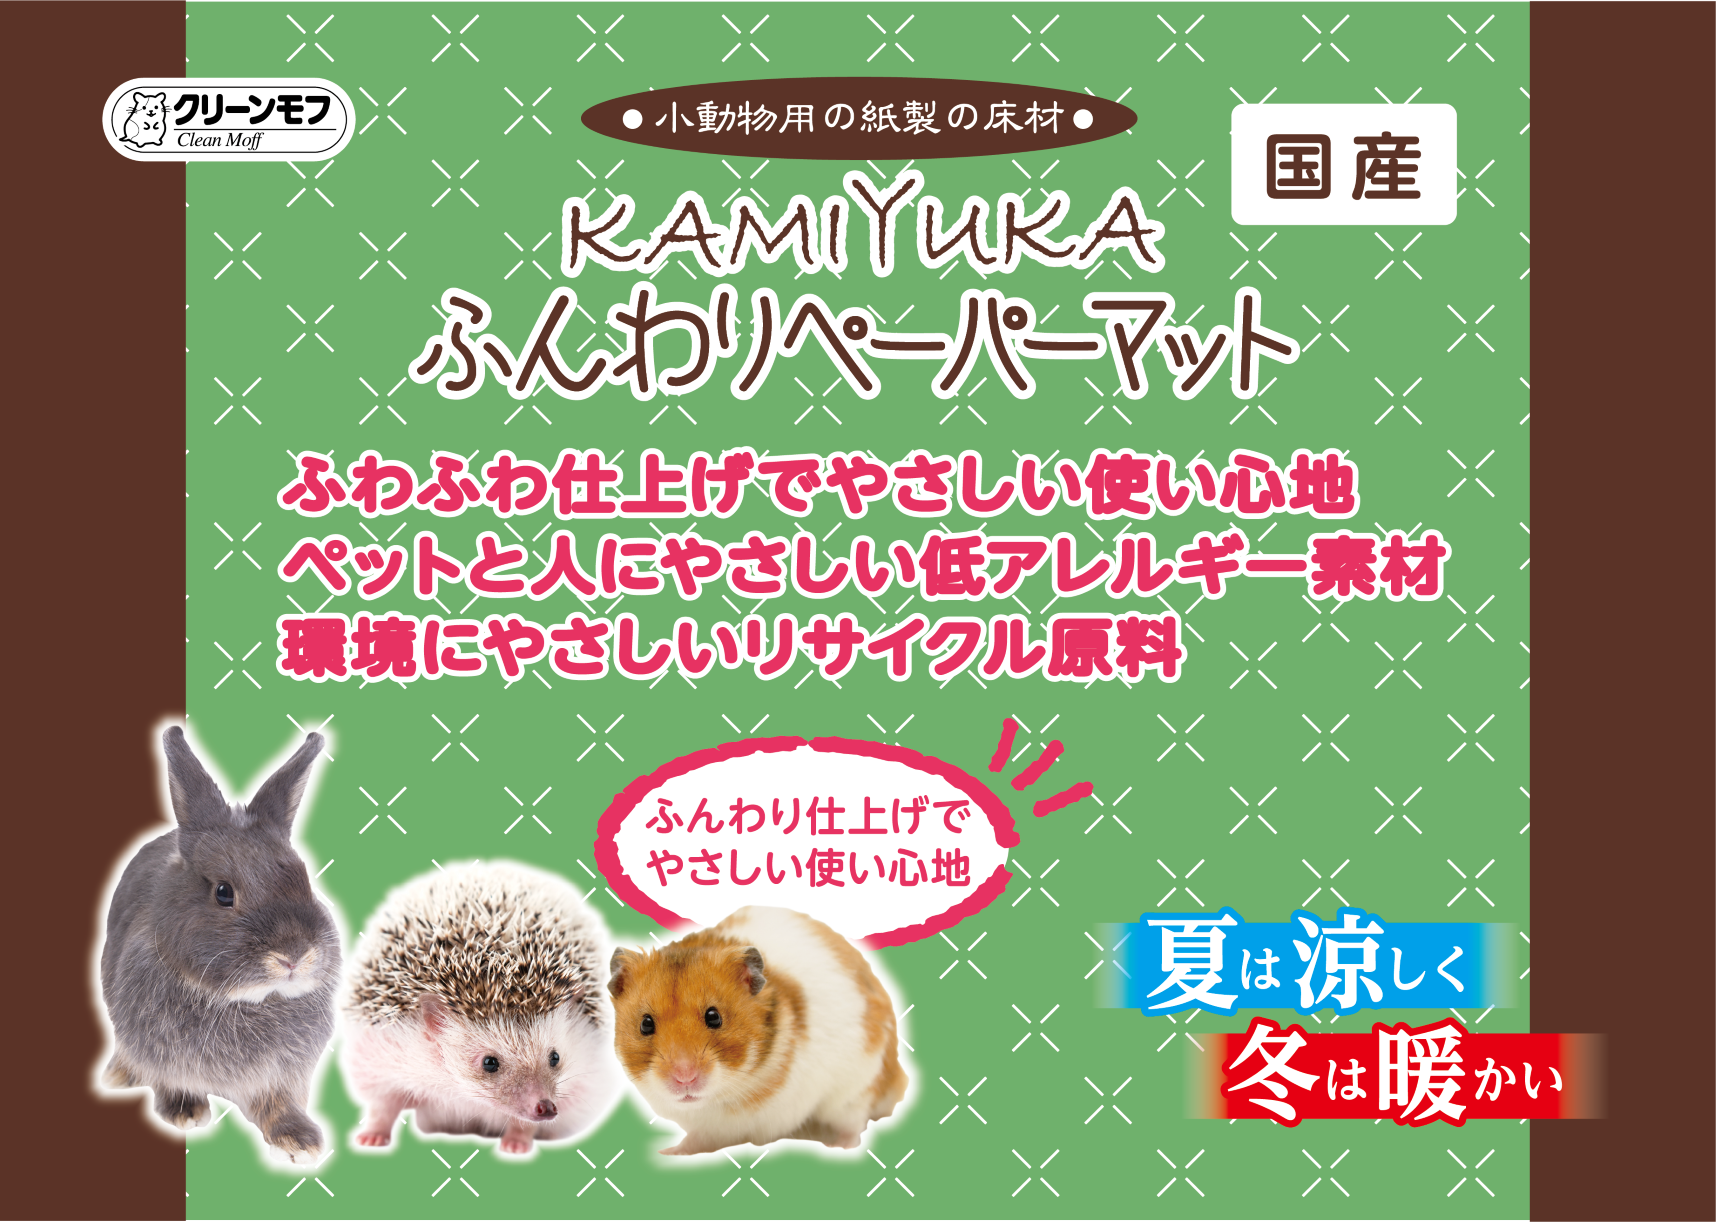 小動物用床材KAMIYUKAふんわりペーパーマット500g 製品特長